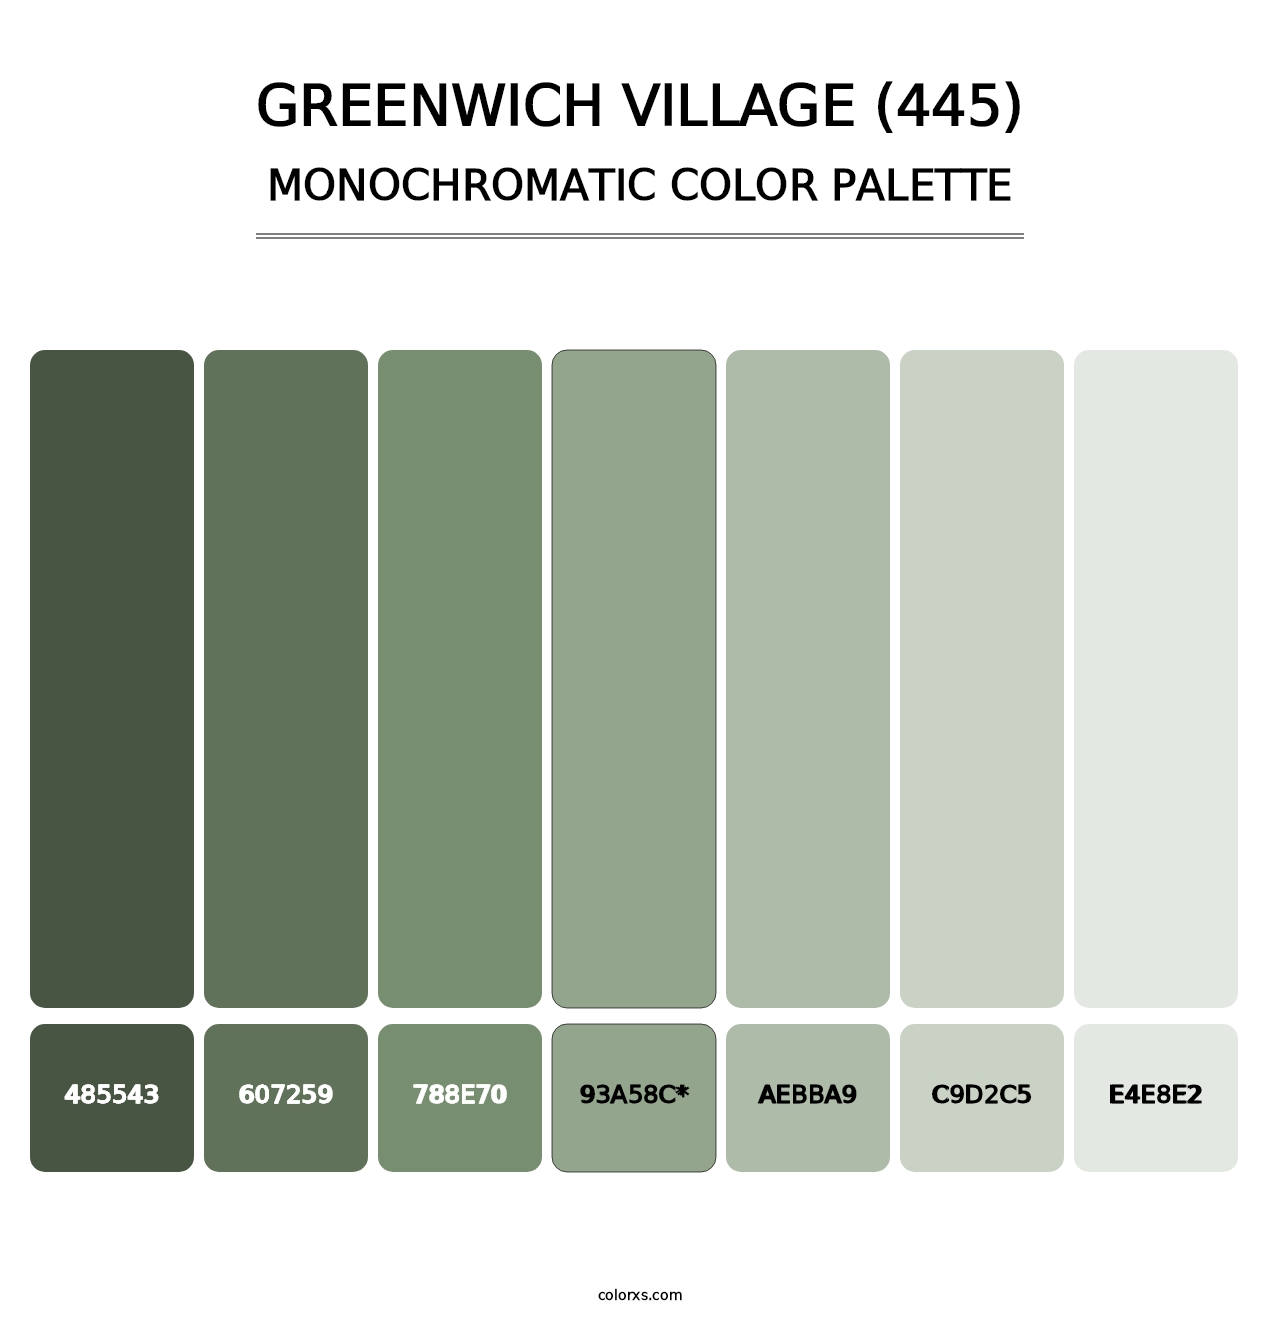 Greenwich Village (445) - Monochromatic Color Palette